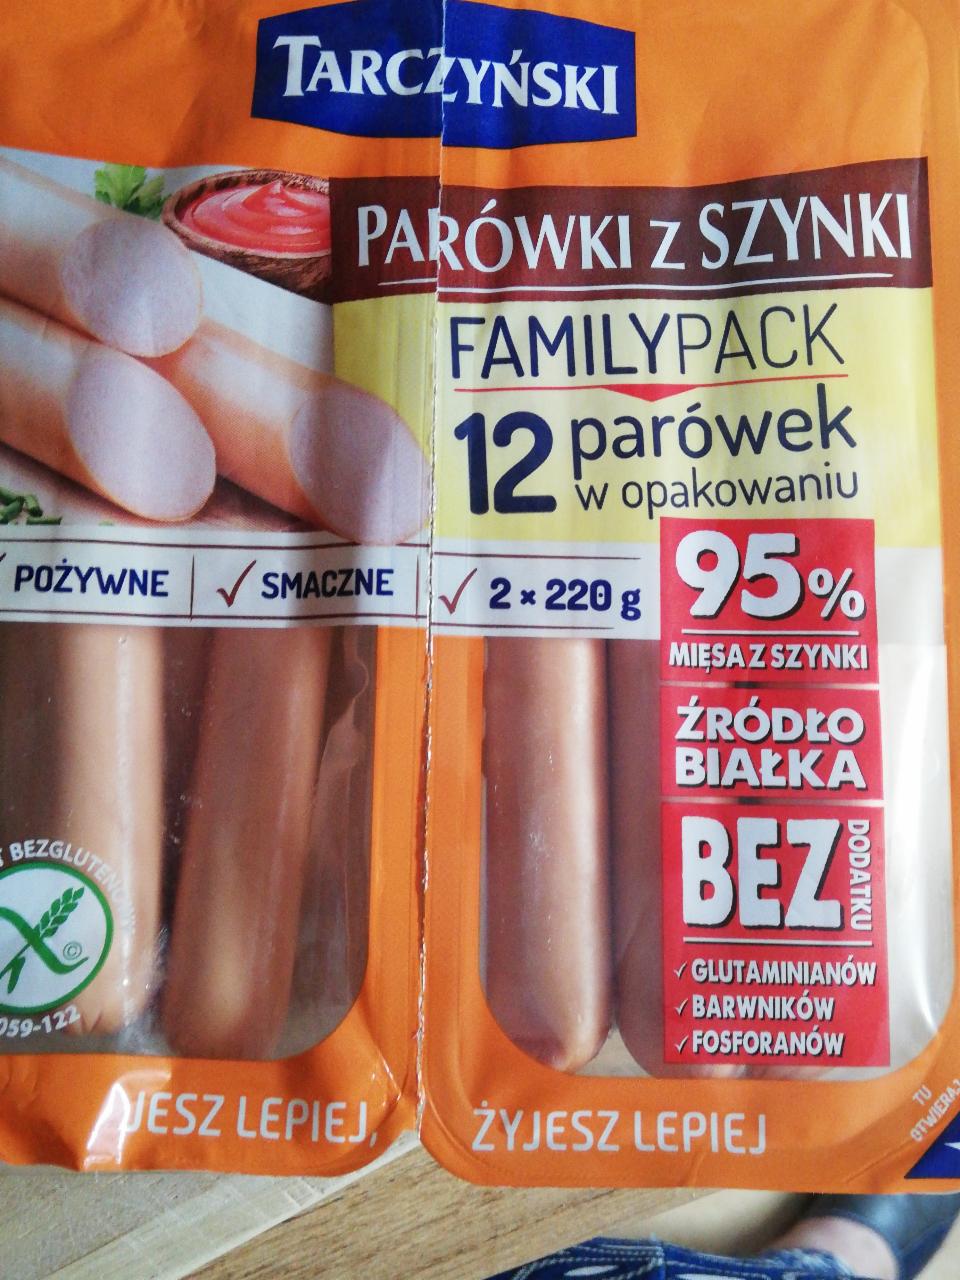 Zdjęcia - Family Pack Parówki premium z szynki Tarczyński